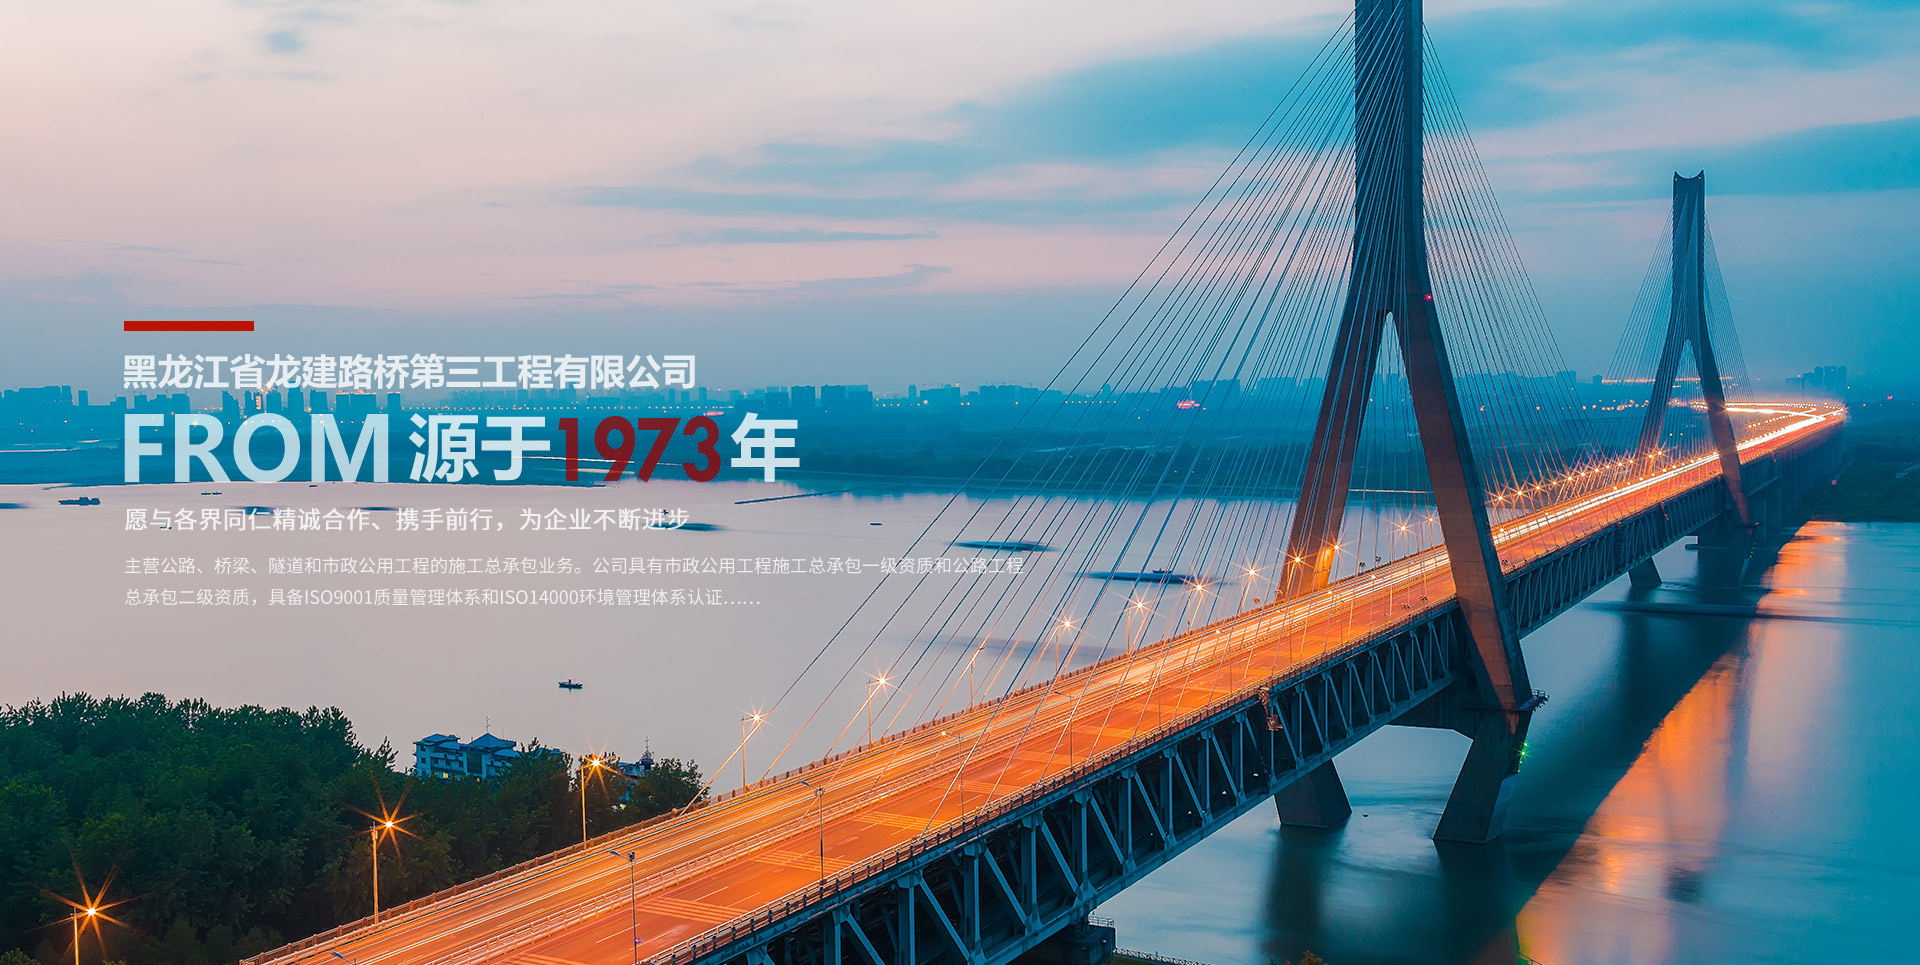  黑龍江省龍建路橋第一工程有限公司